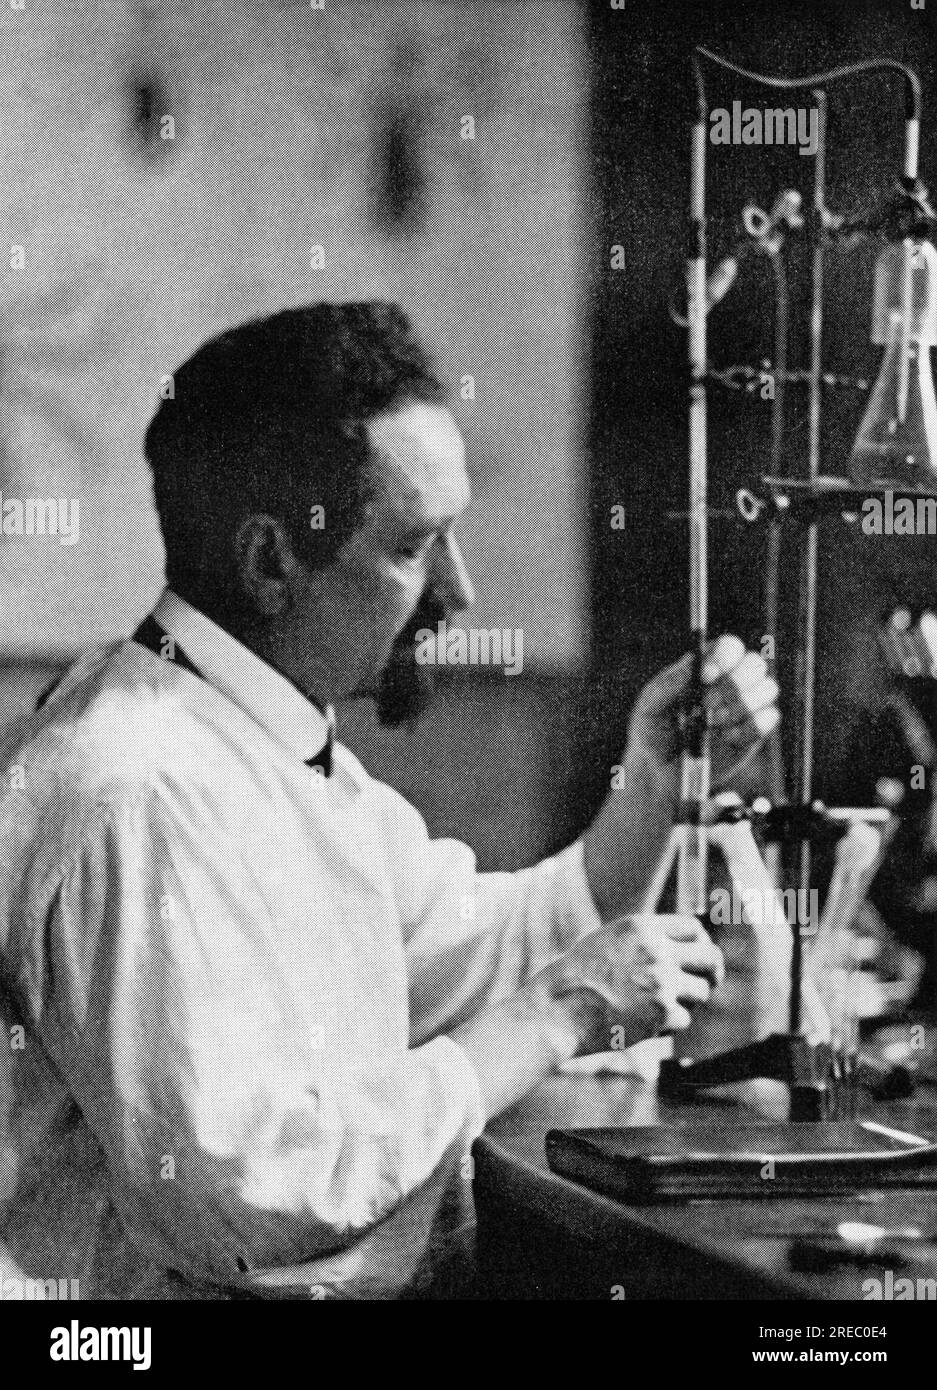 Weigl, Rudolf, 2.9.1883 - 11.8,1957, scientifique polonais (biologiste), dans son laboratoire, 1930S, INFO-AUTORISATION-DROITS-SUPPLÉMENTAIRES-NON-DISPONIBLE Banque D'Images